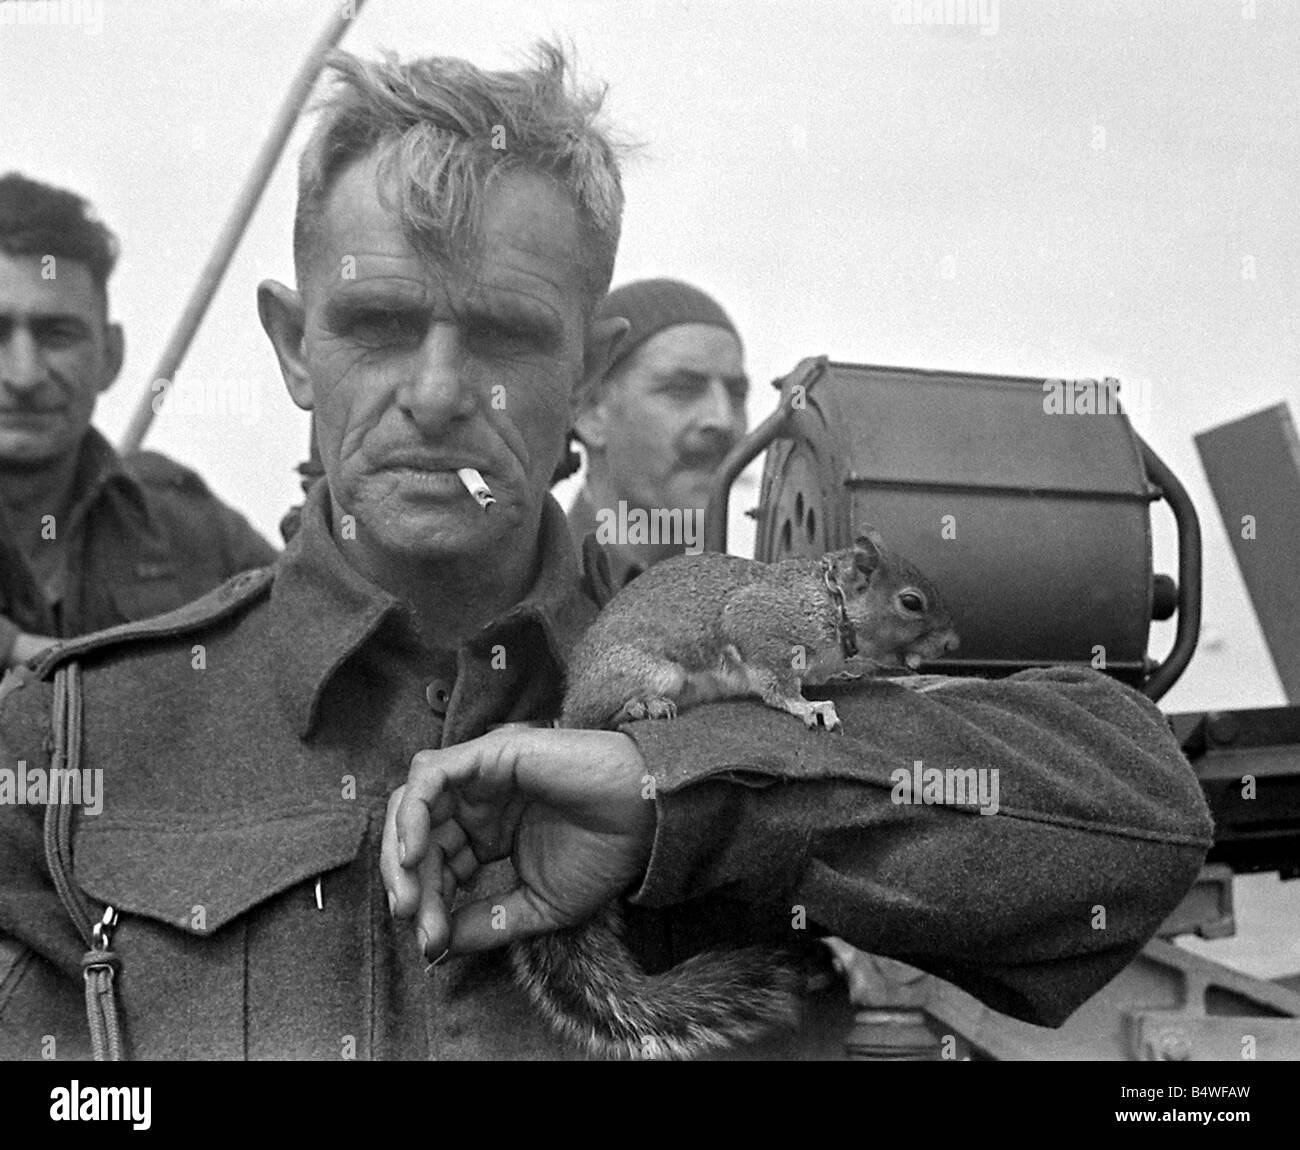 Soldat britannique avec un écureuil sur son bras dans un port de Normandie dans le Nord de la France peu après le jour j commencé l'invasion du continent au cours de la Seconde Guerre mondiale Juin 1944 Banque D'Images